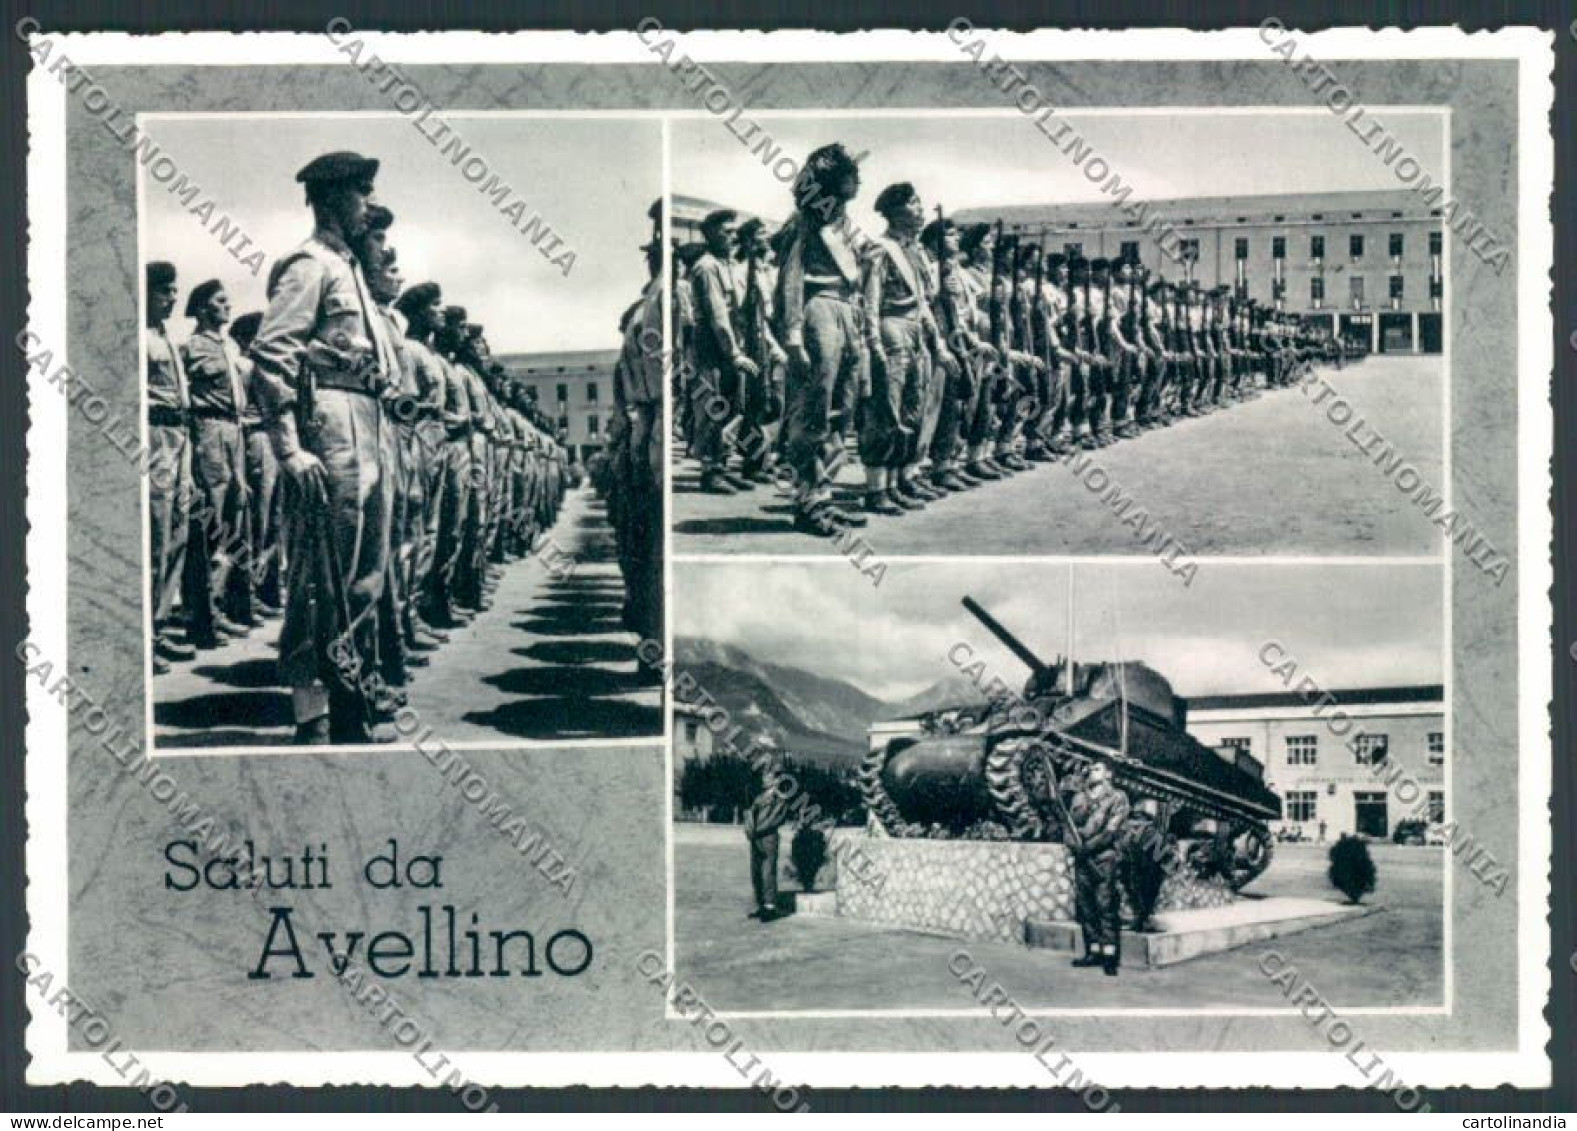 Avellino Militari Carroarmato Foto FG Cartolina ZF5999 - Avellino